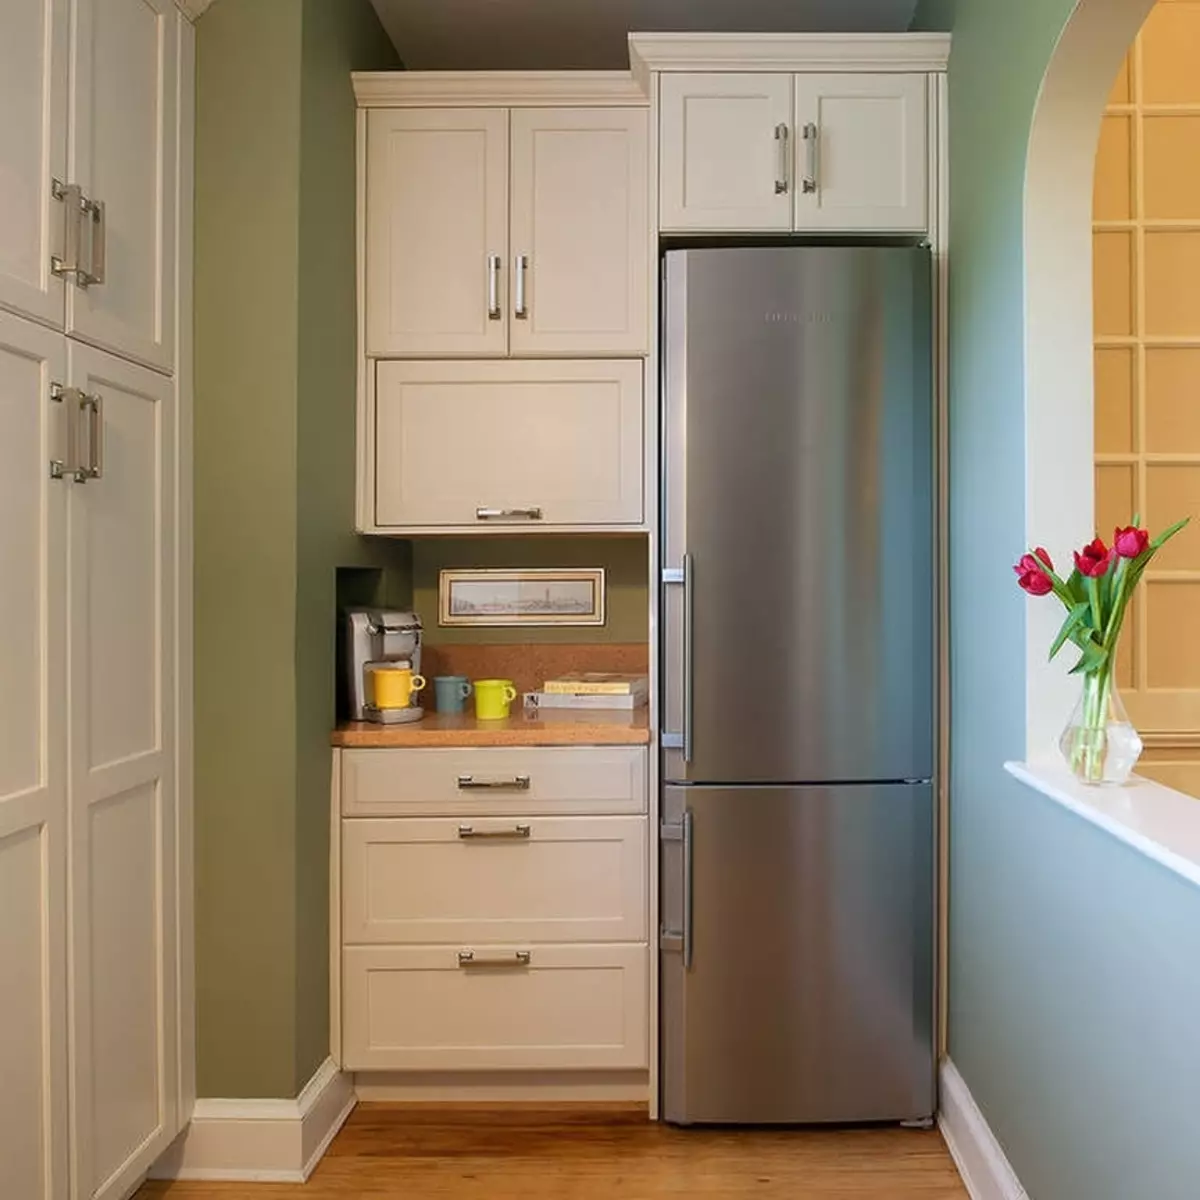 آشپزخانه داخلی کجاست؟ ایده عکس طراحی یخچال و فریزر